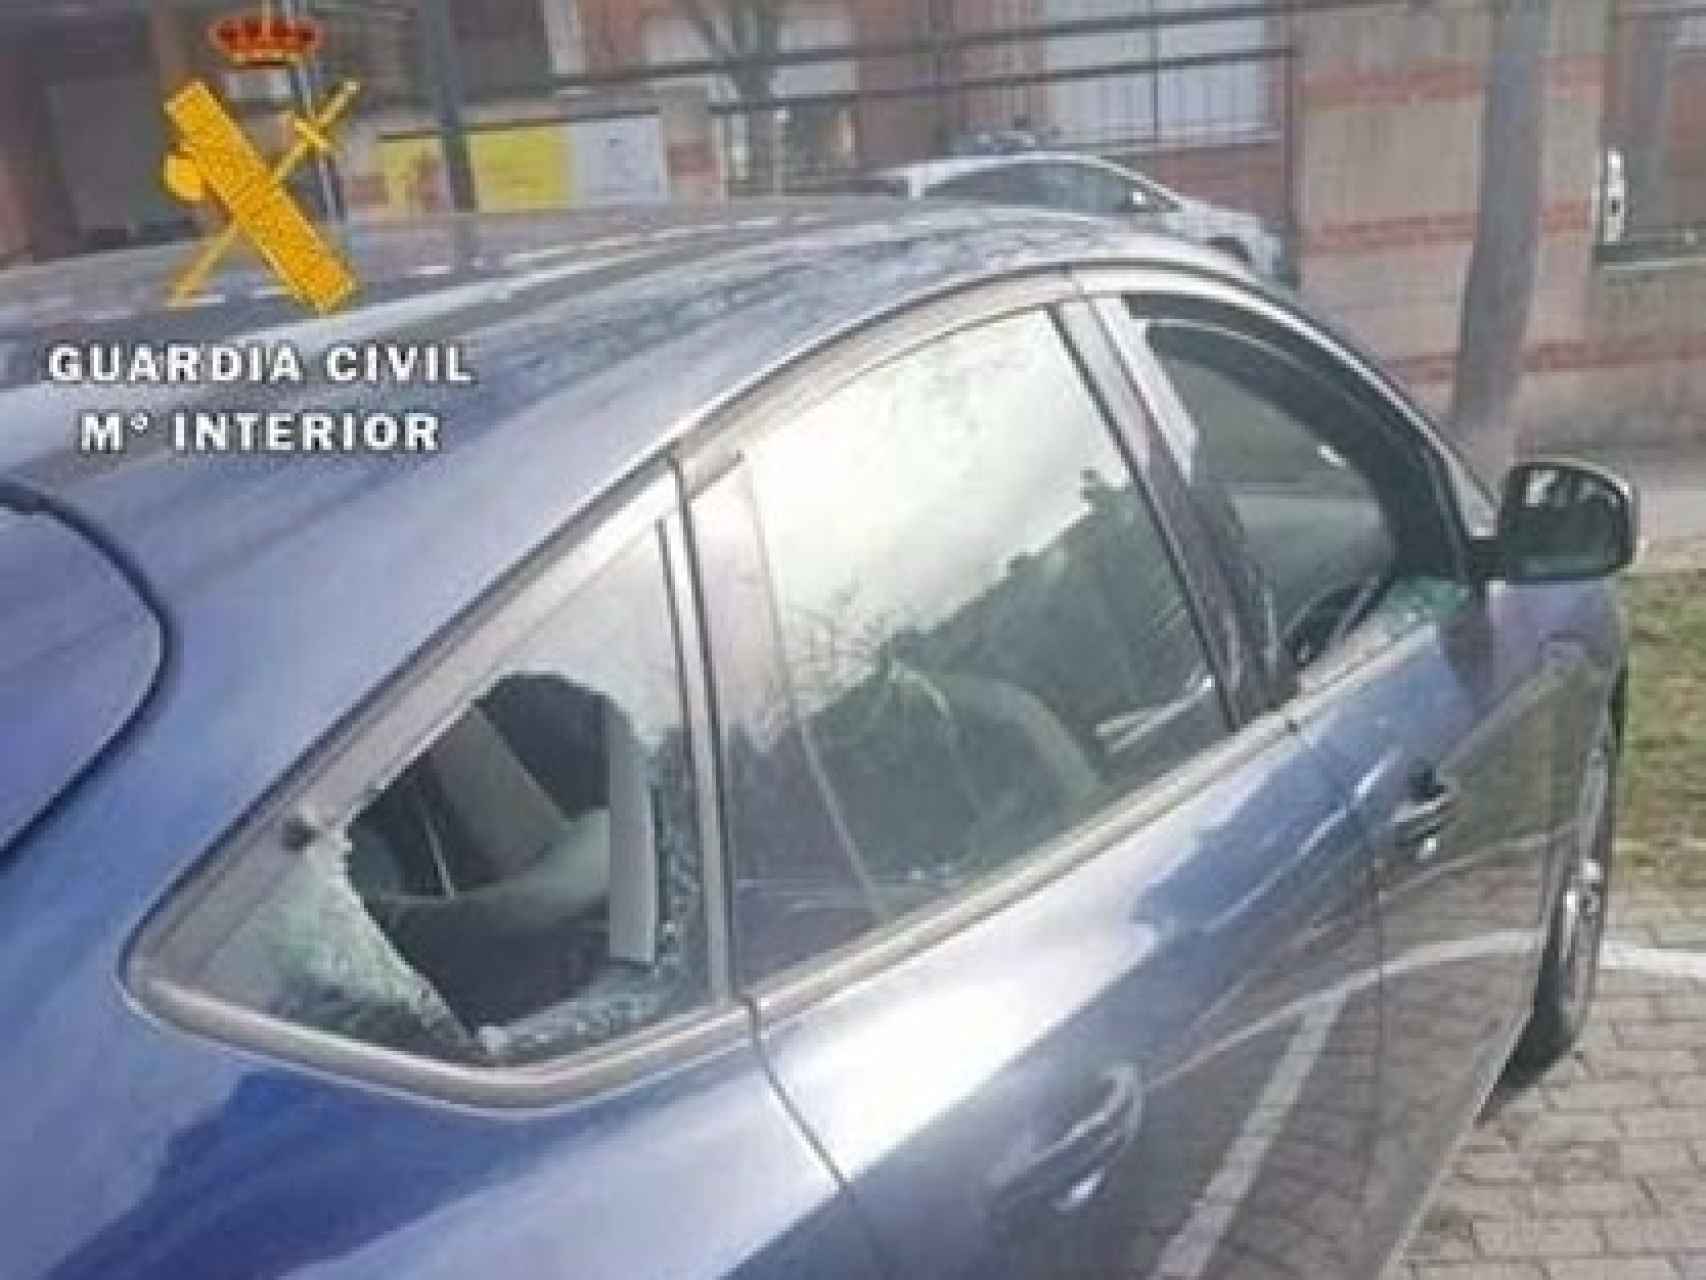 Imagen de uno de los coches robados facilitada por la Guardia Civil